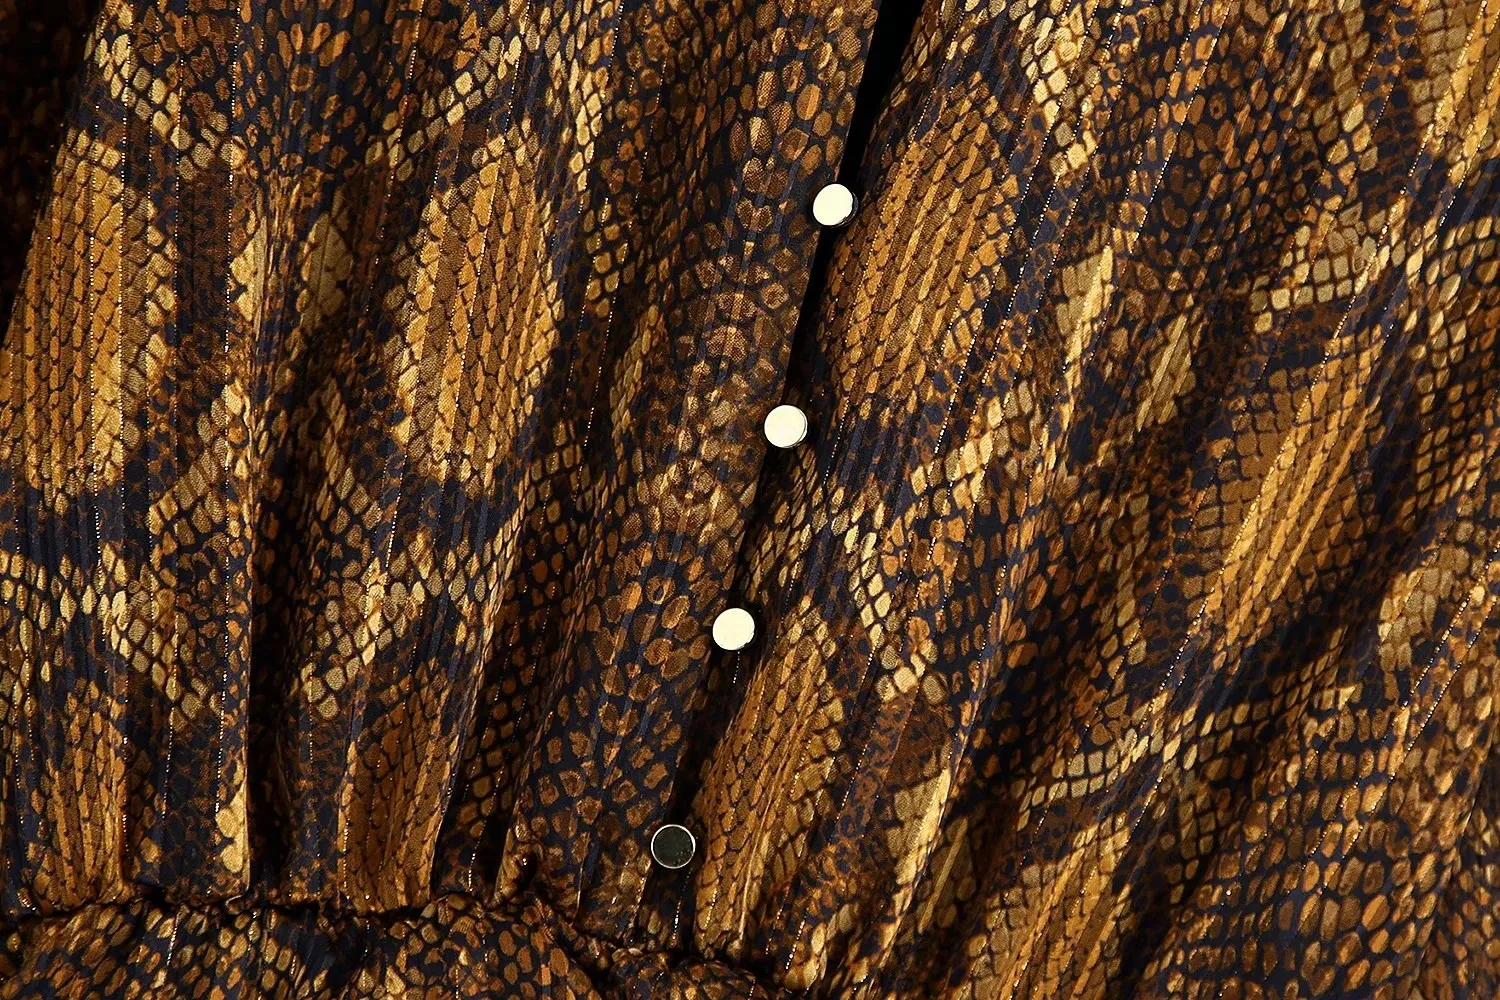 Foridol Yılan Baskı Altın Bodycon Parti Elbise Kadın Fırfır Dantel Düğme Bayanlar Kısa Elbise Fener Kol Vintage Kış Elbise 210415